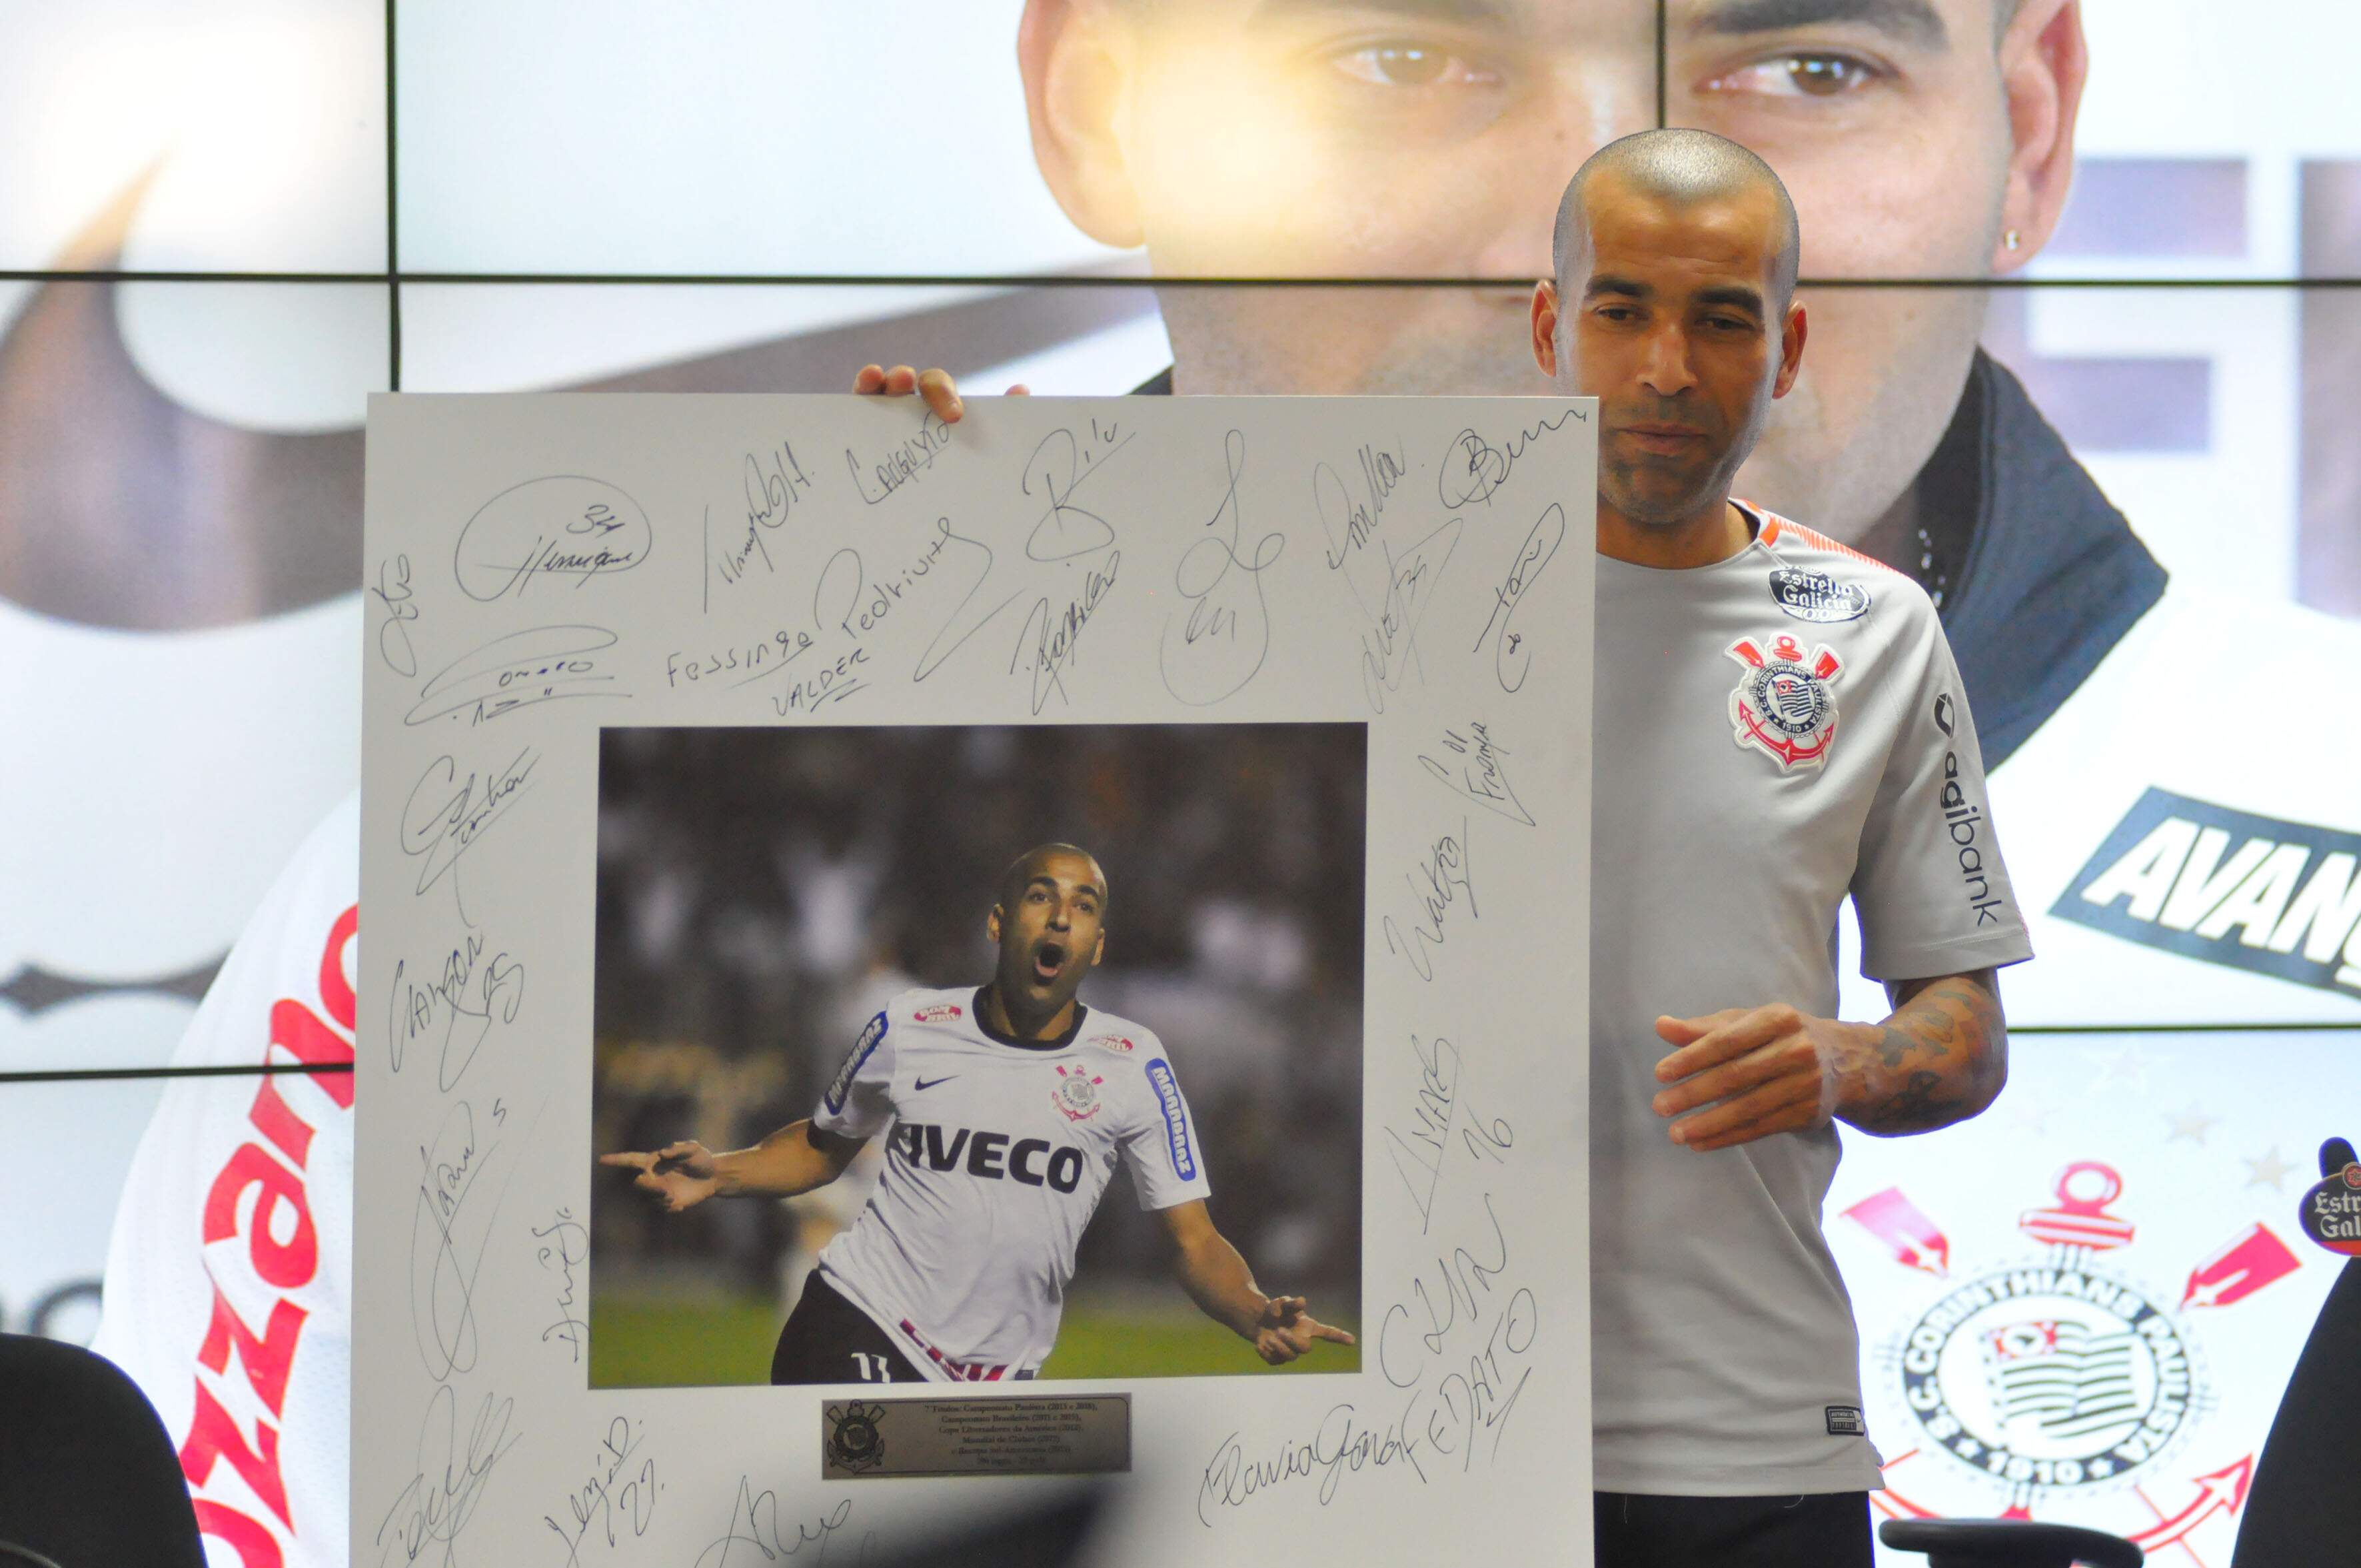 Assim como Danilo, Sheik recebeu placa com foto do ano em que o Corinthians foi campeão Mundial